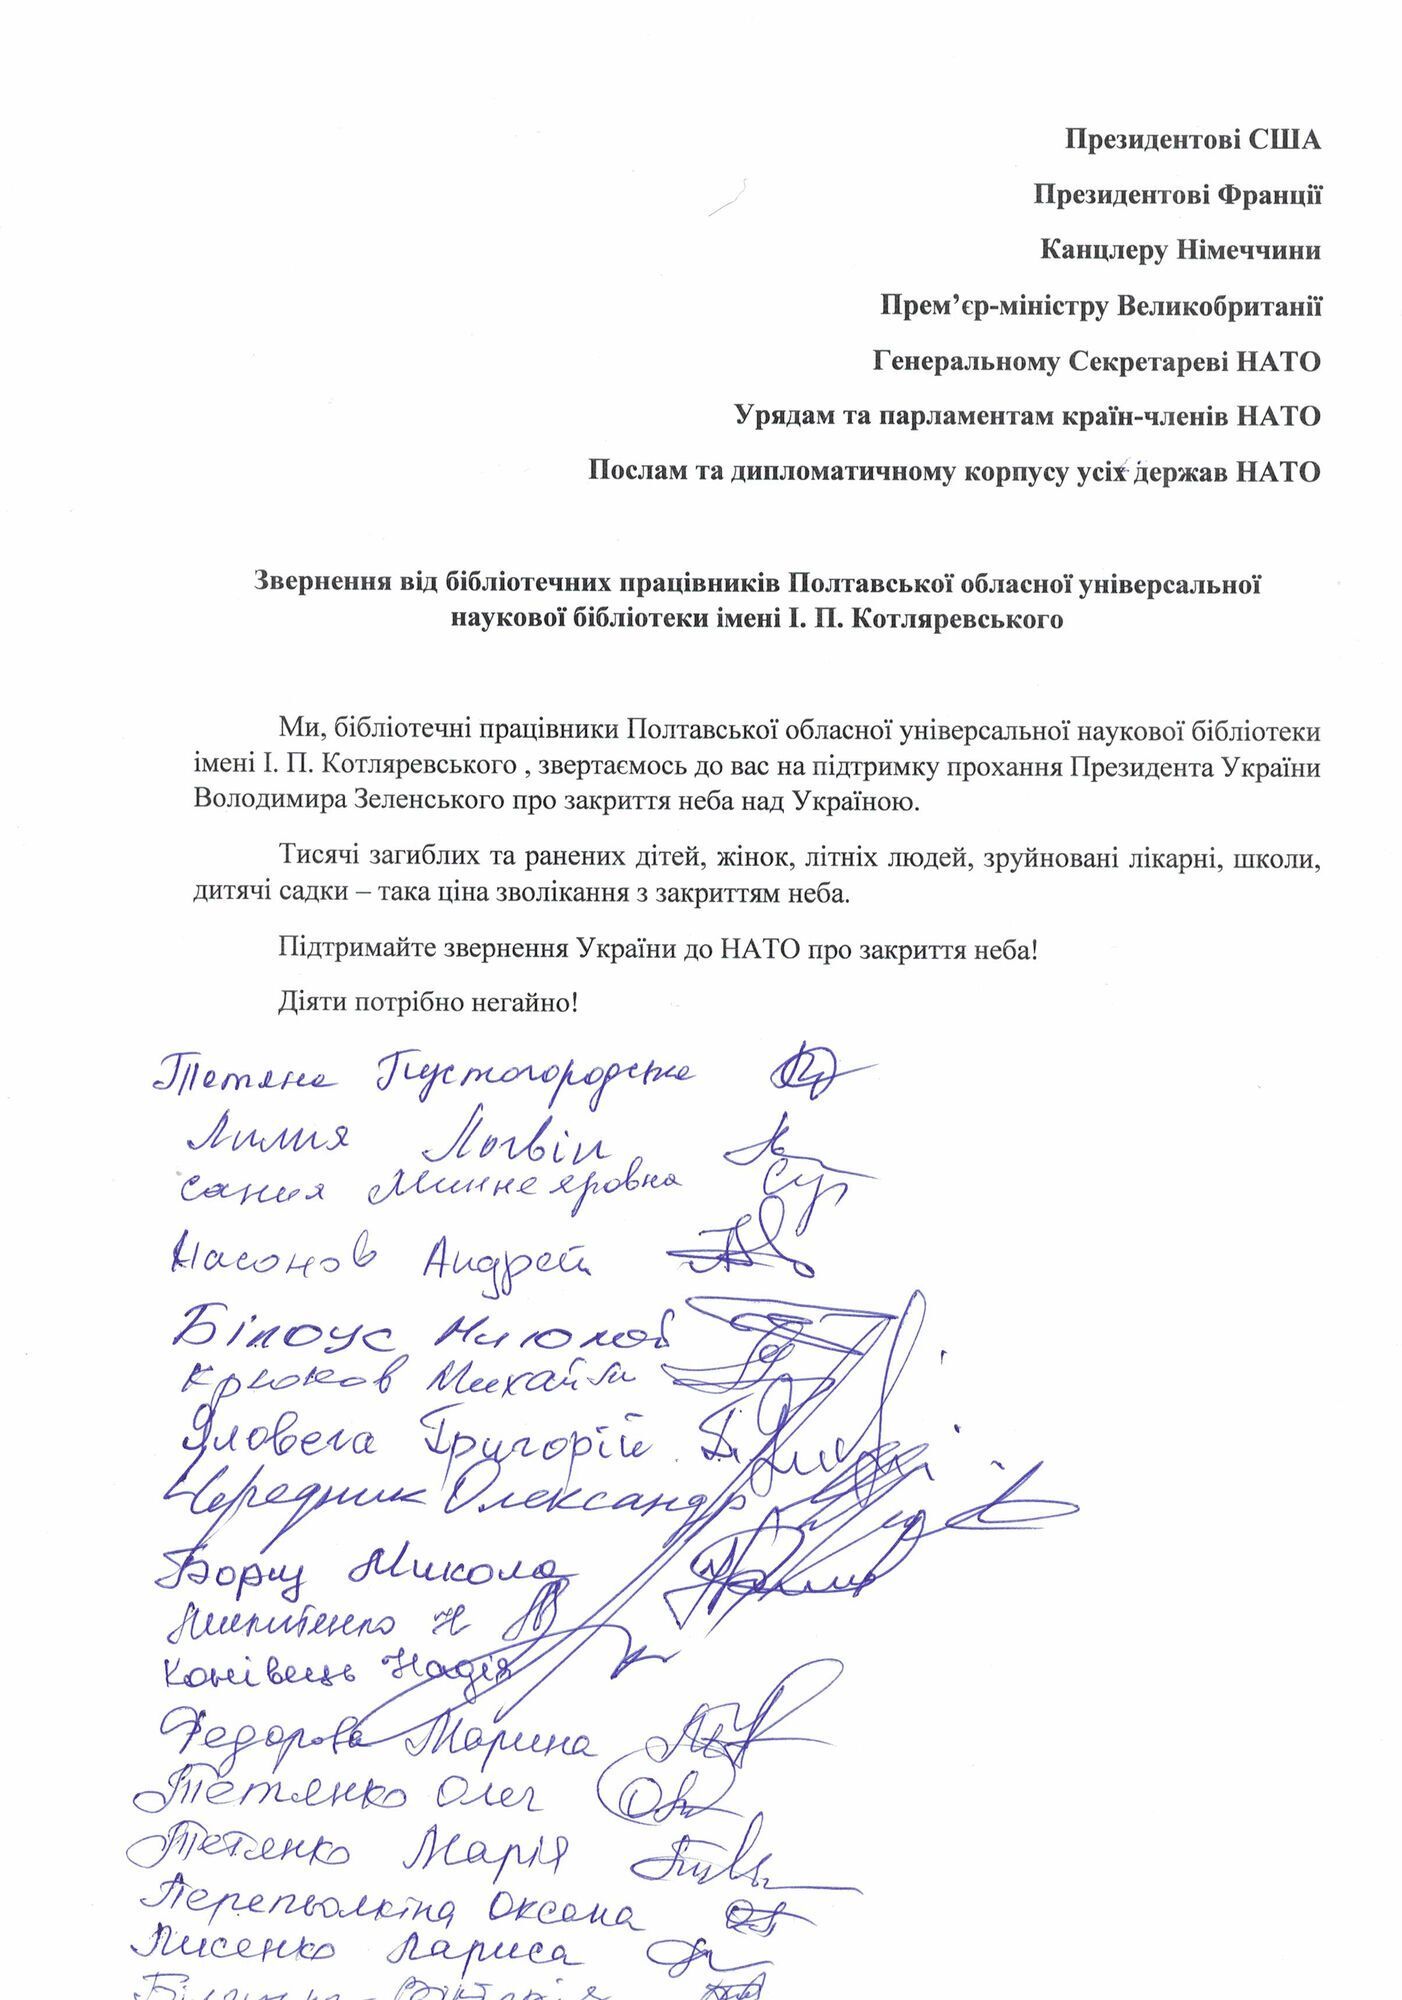 На Полтавщині понад 200 тисяч мешканців підписали звернення до НАТО про закриття неба над Україною